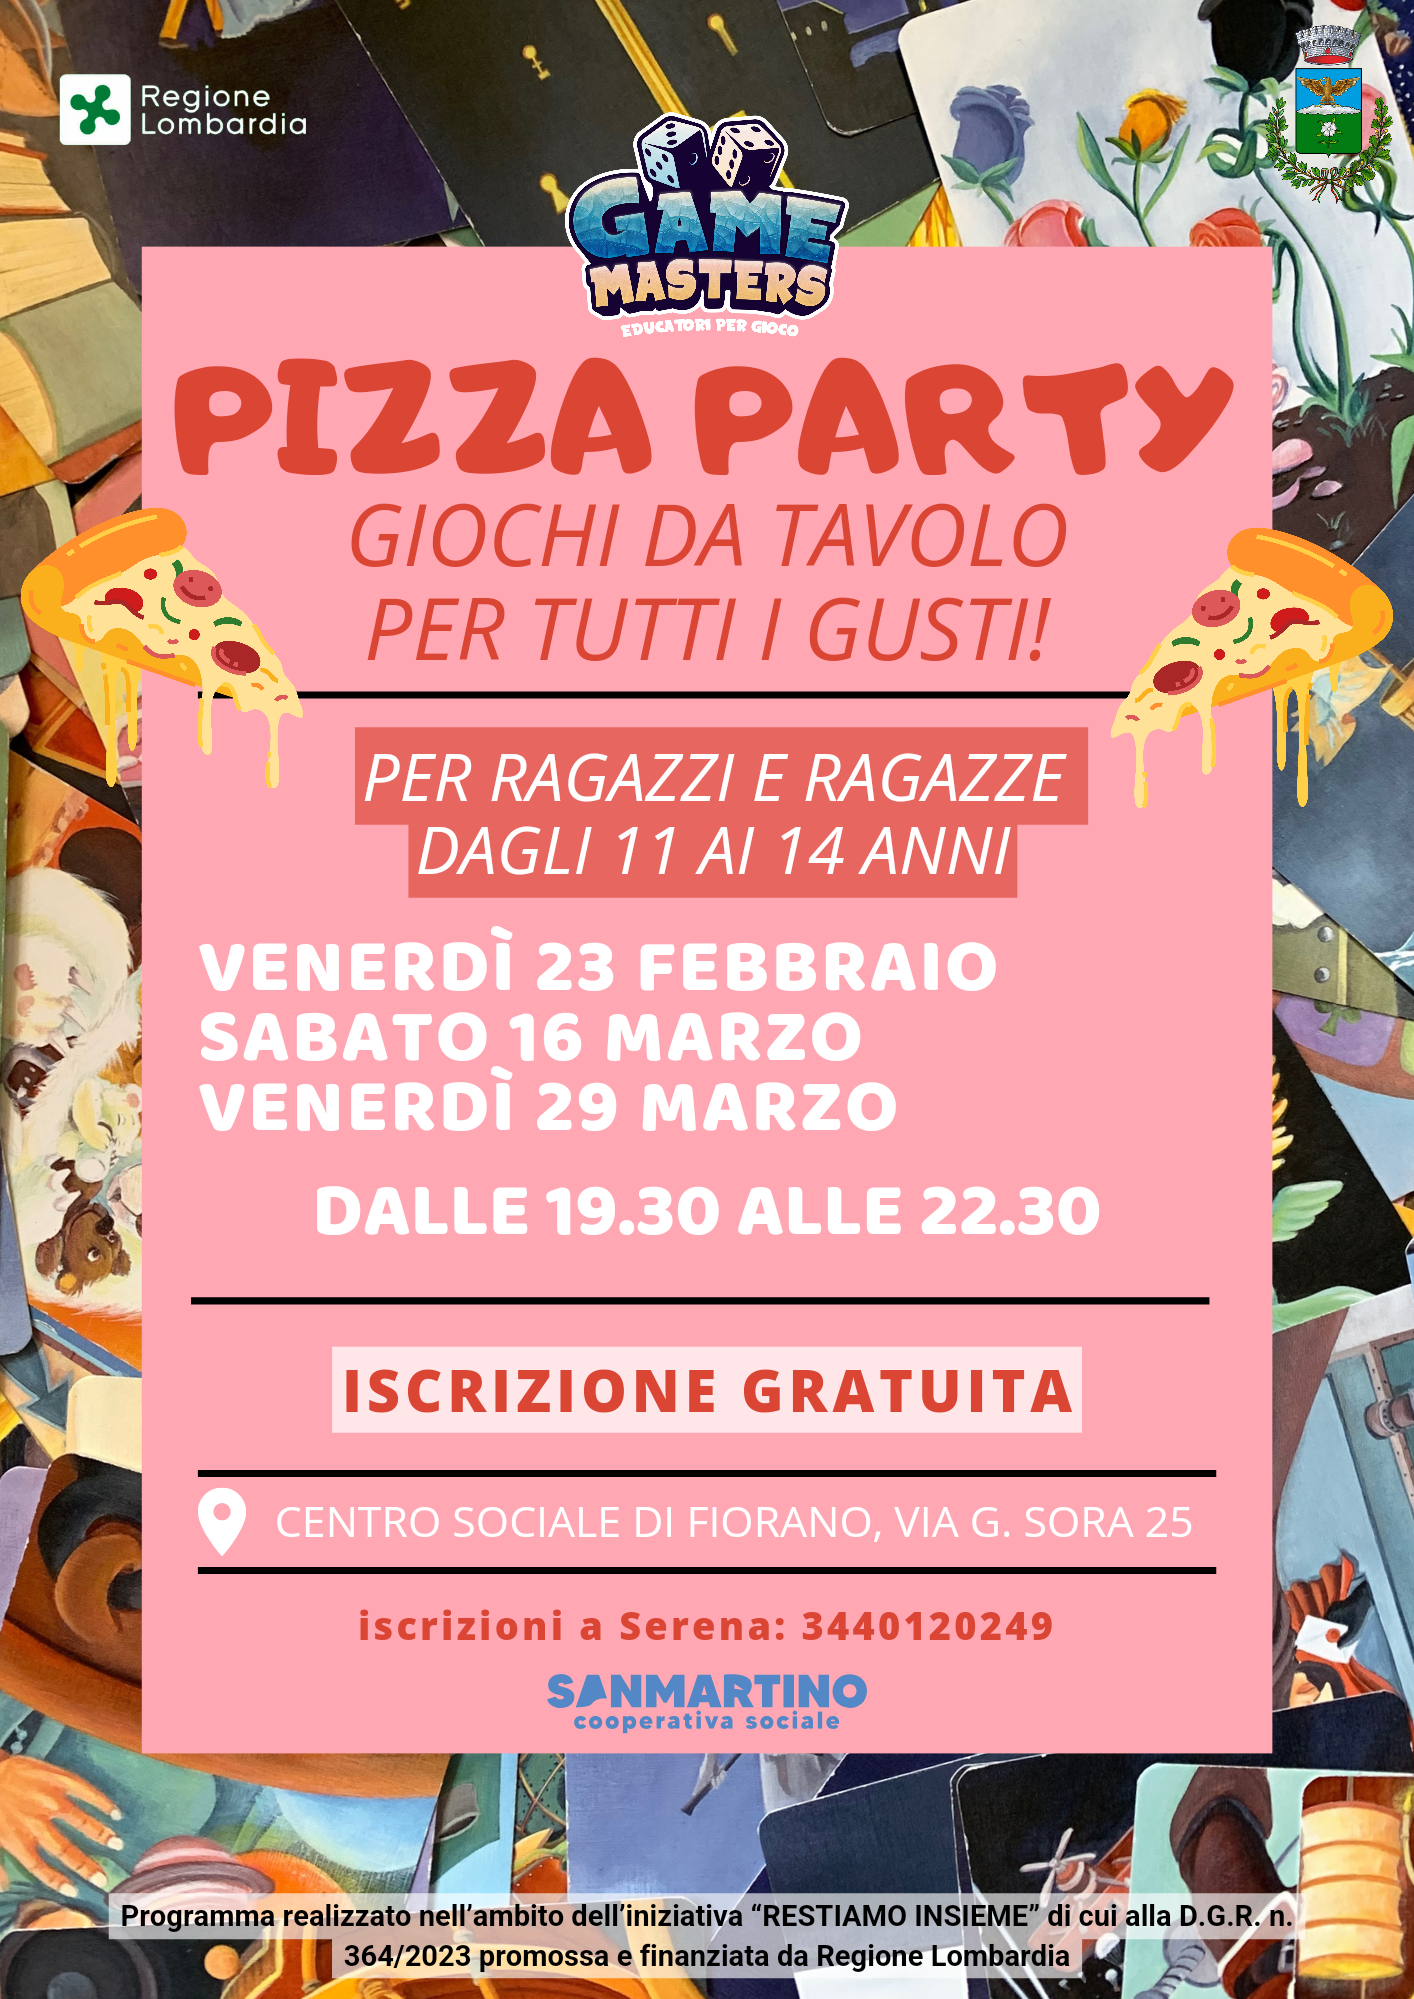 Immagine che raffigura PIZZA PARTY